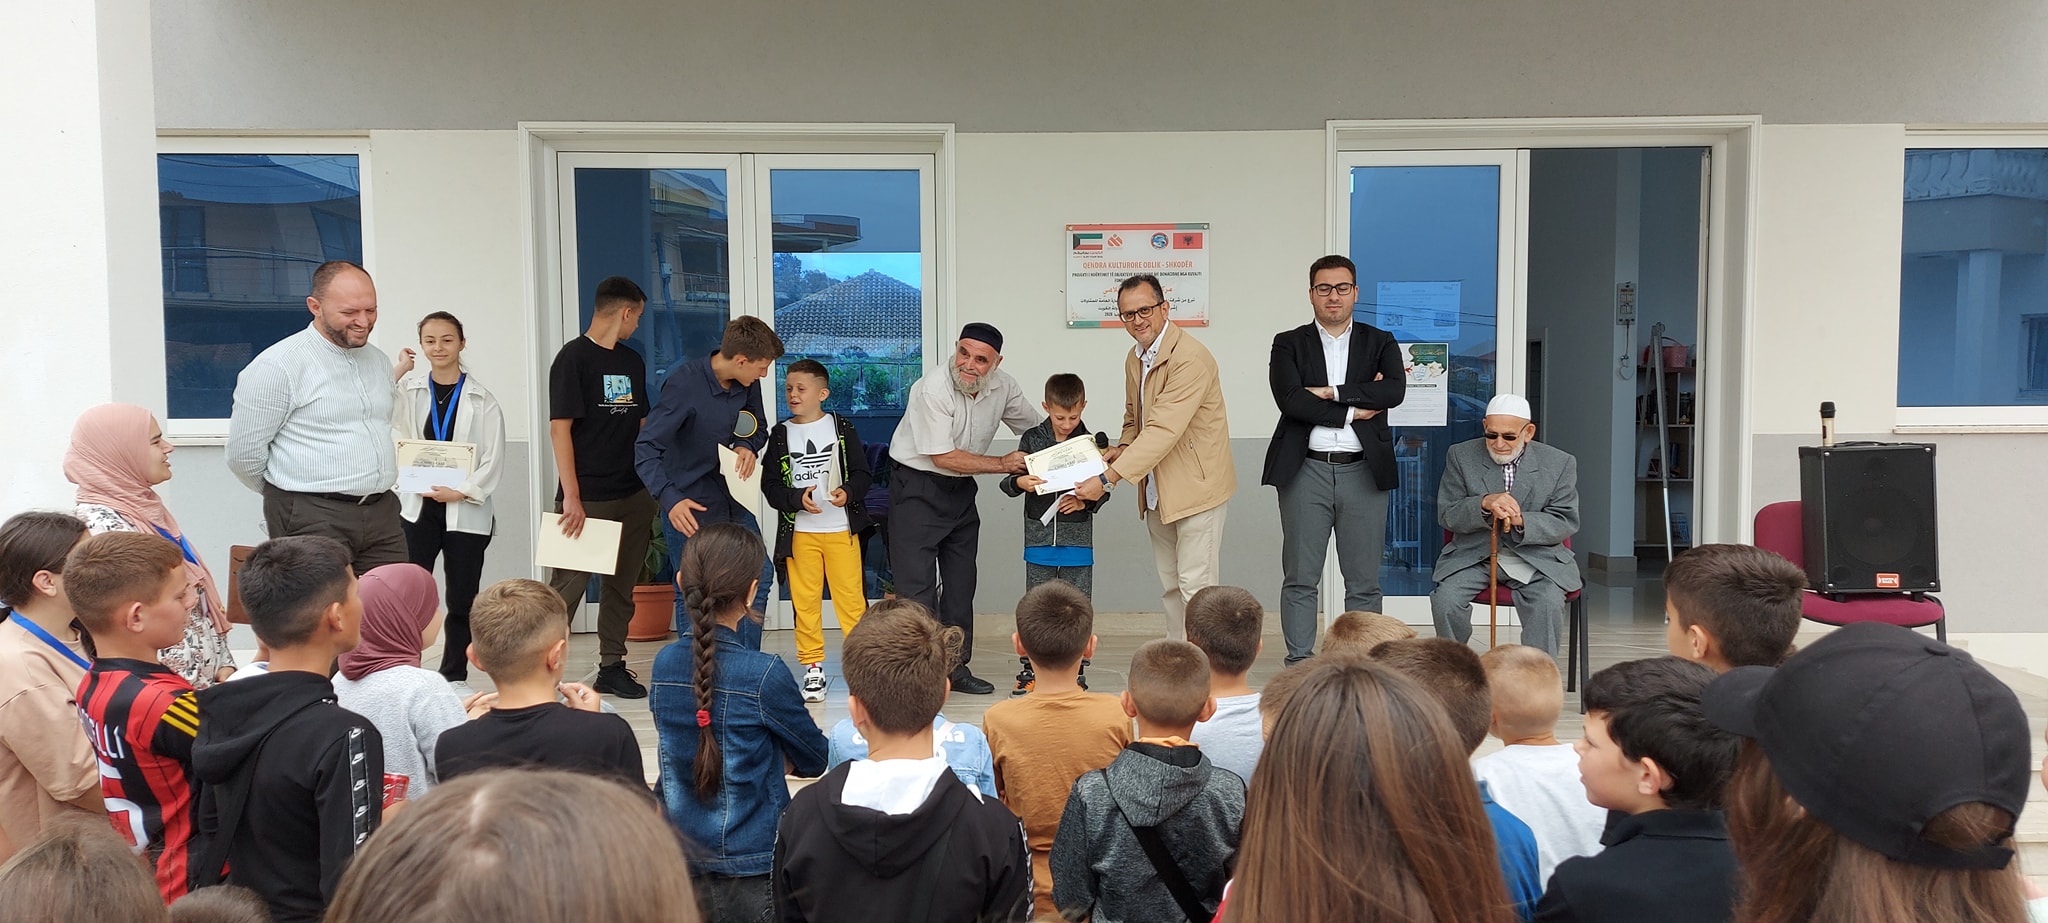 U zhvillua konkursi i madh fetar, edicioni i 11-të me nxënësit e mejtepeve të xhamive të zonave administrative Oblikë dhe Bërdicë